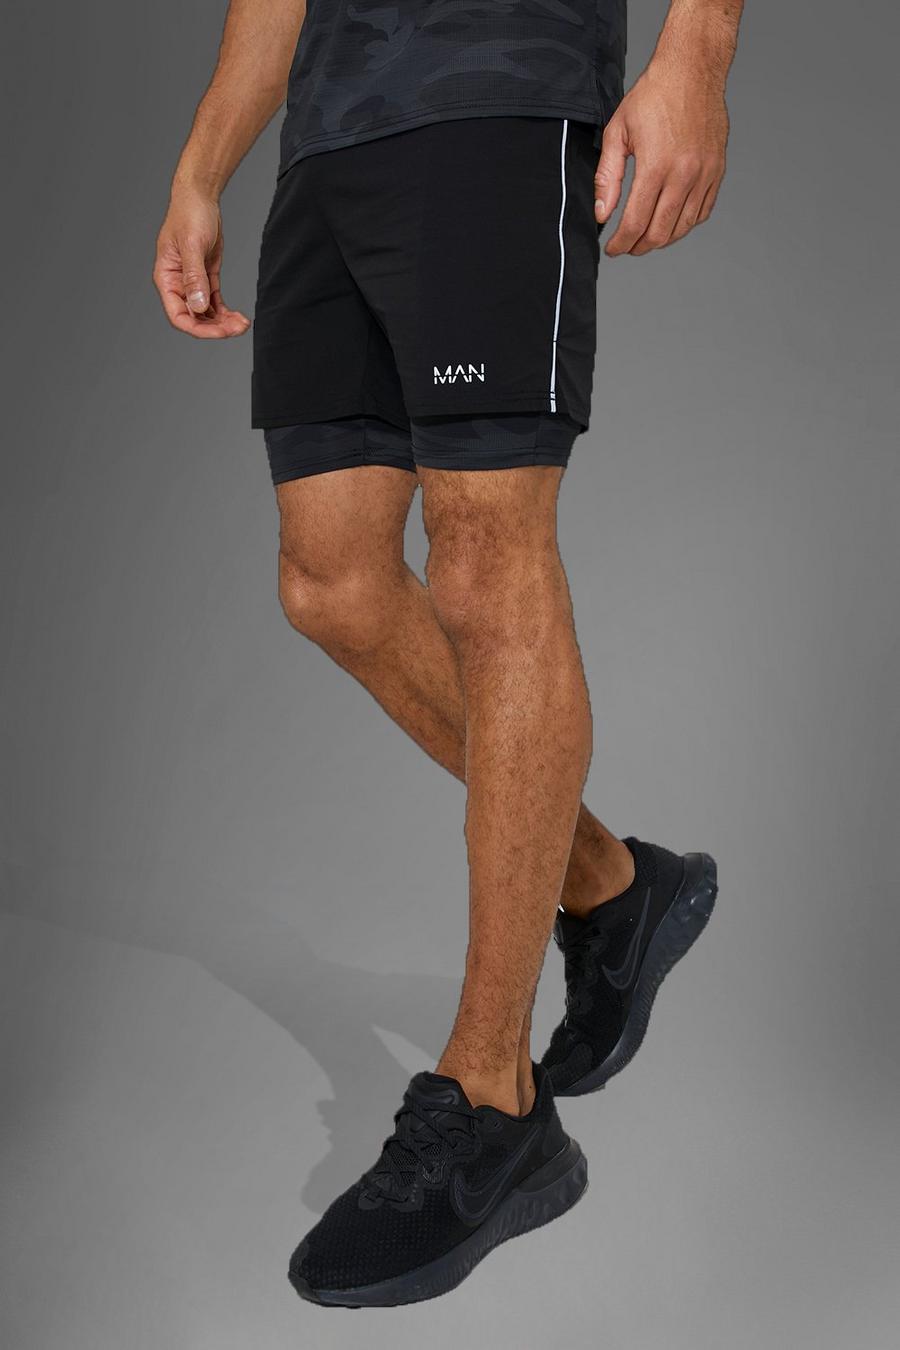 Pantalón corto MAN Active deportivo de nailon 2 en 1 con estampado de camuflaje, Black nero